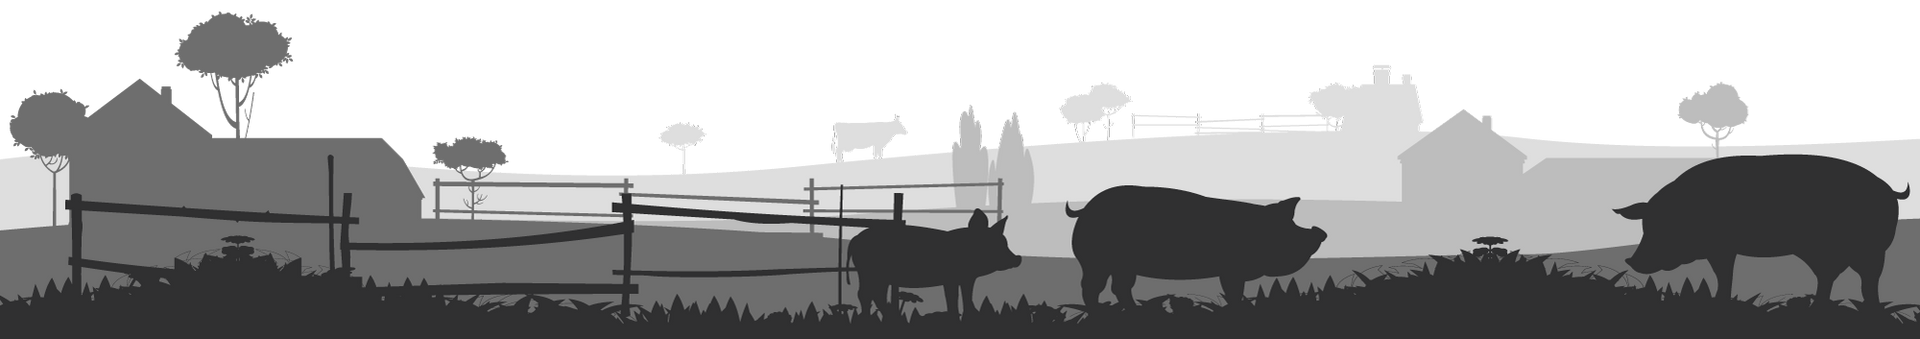 Grafik einer Gruppe von Schweinen, die auf einem Feld stehen. Im Hintergrund stehen Bauernhöfe und ein Hofladen.